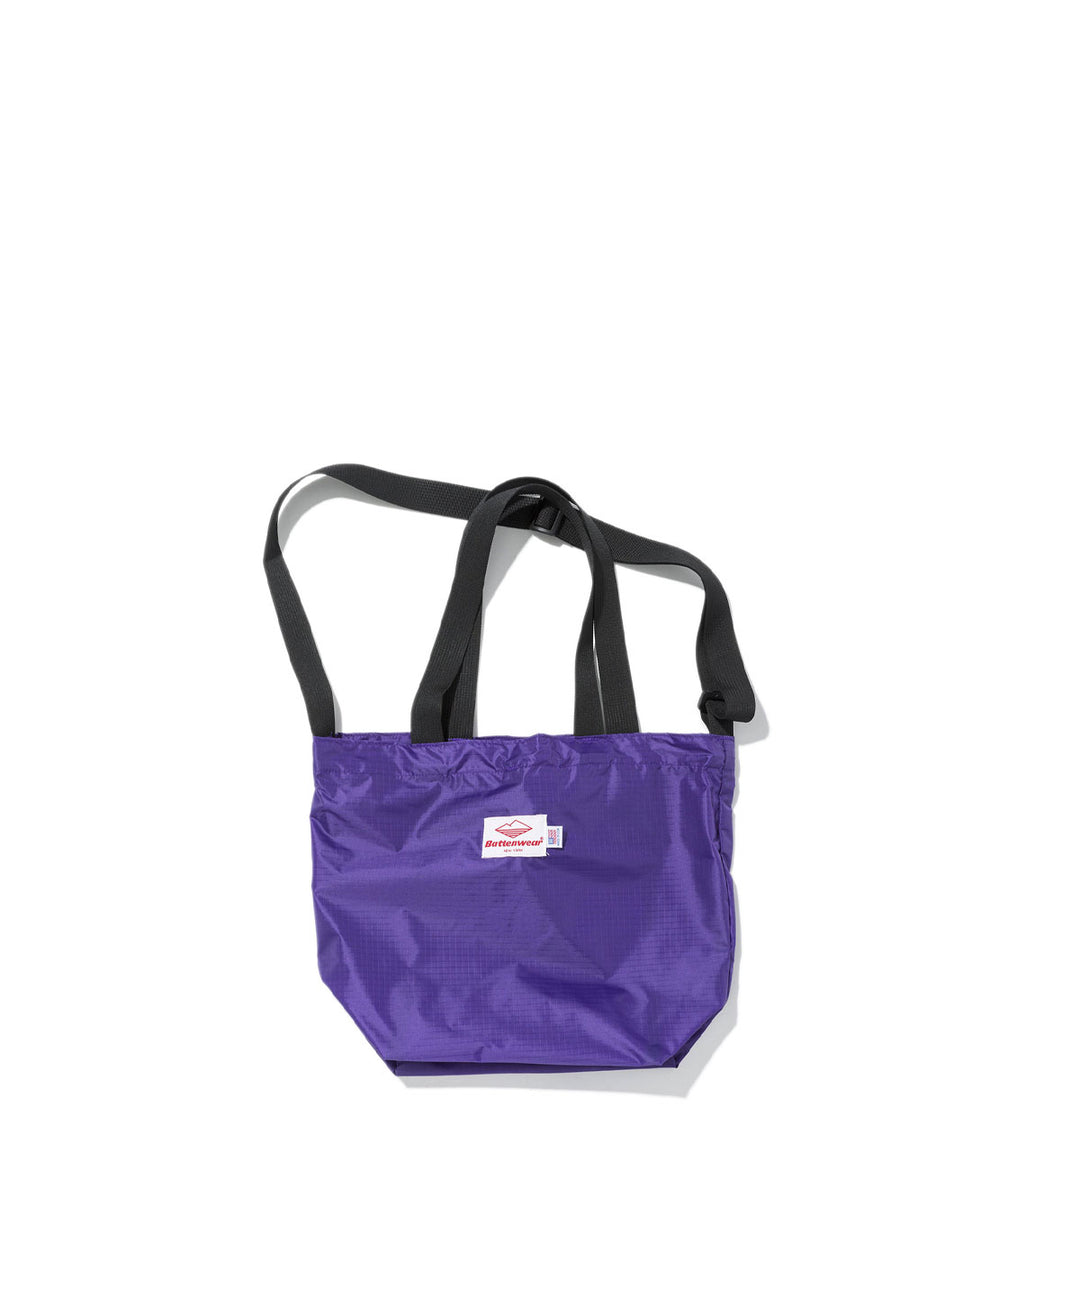 FW22 Bags – Battenwear